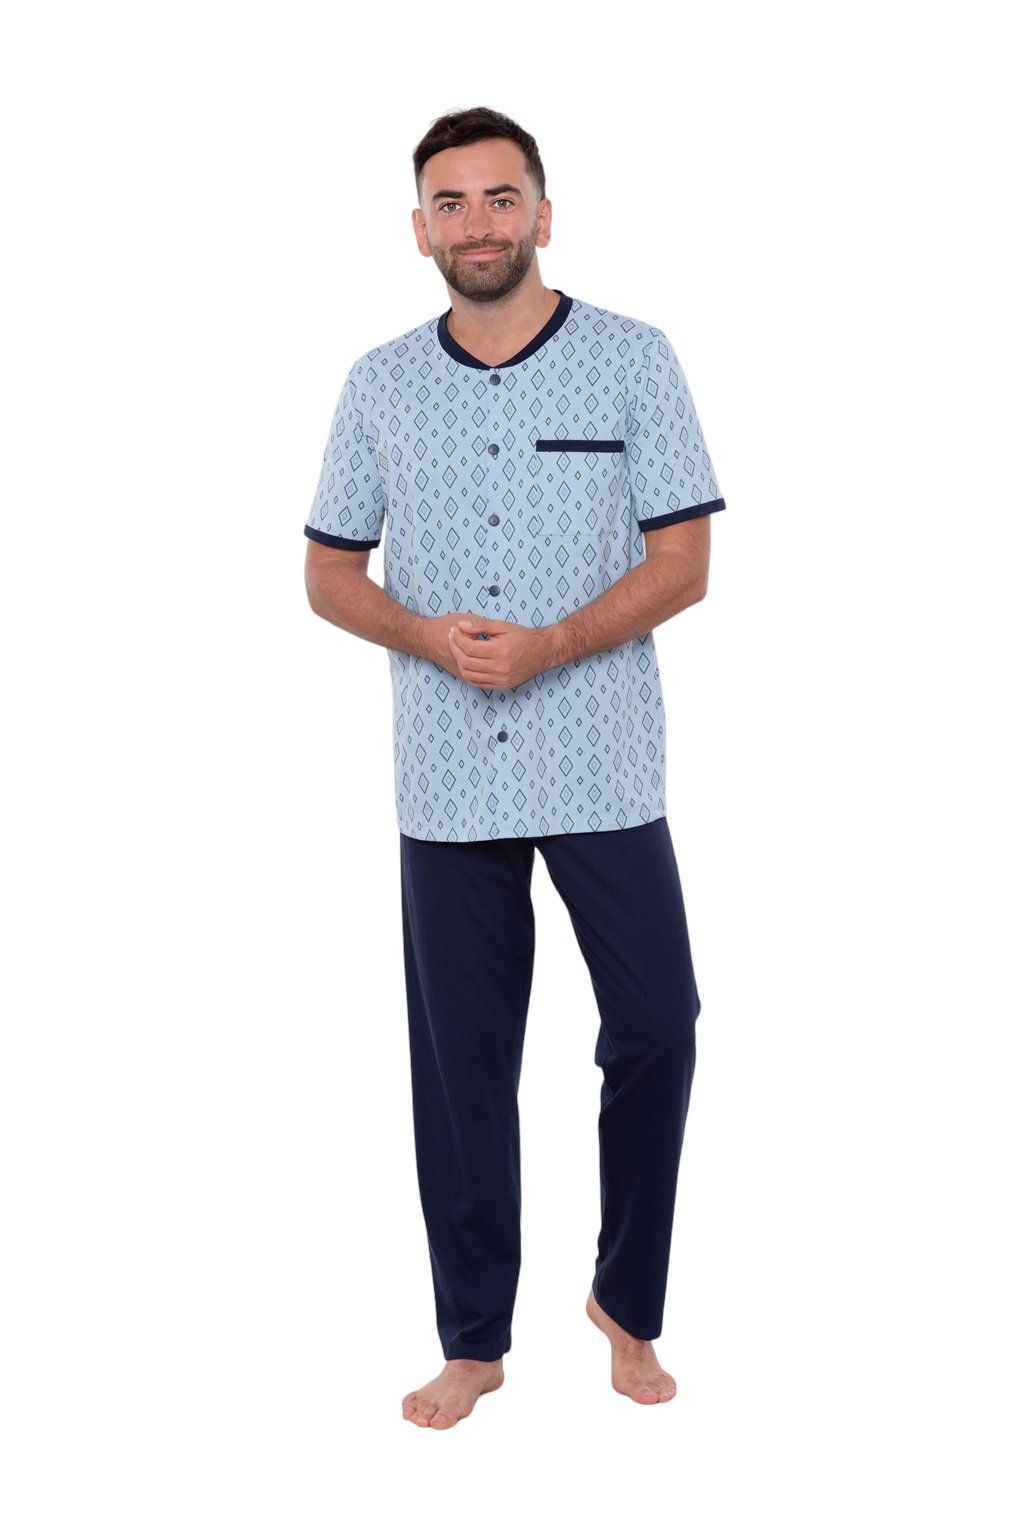 Pánské pyžamo s krátkým rukávem a dlouhými nohavicemi, 204122 477, modrá - Velikost XL Wadima